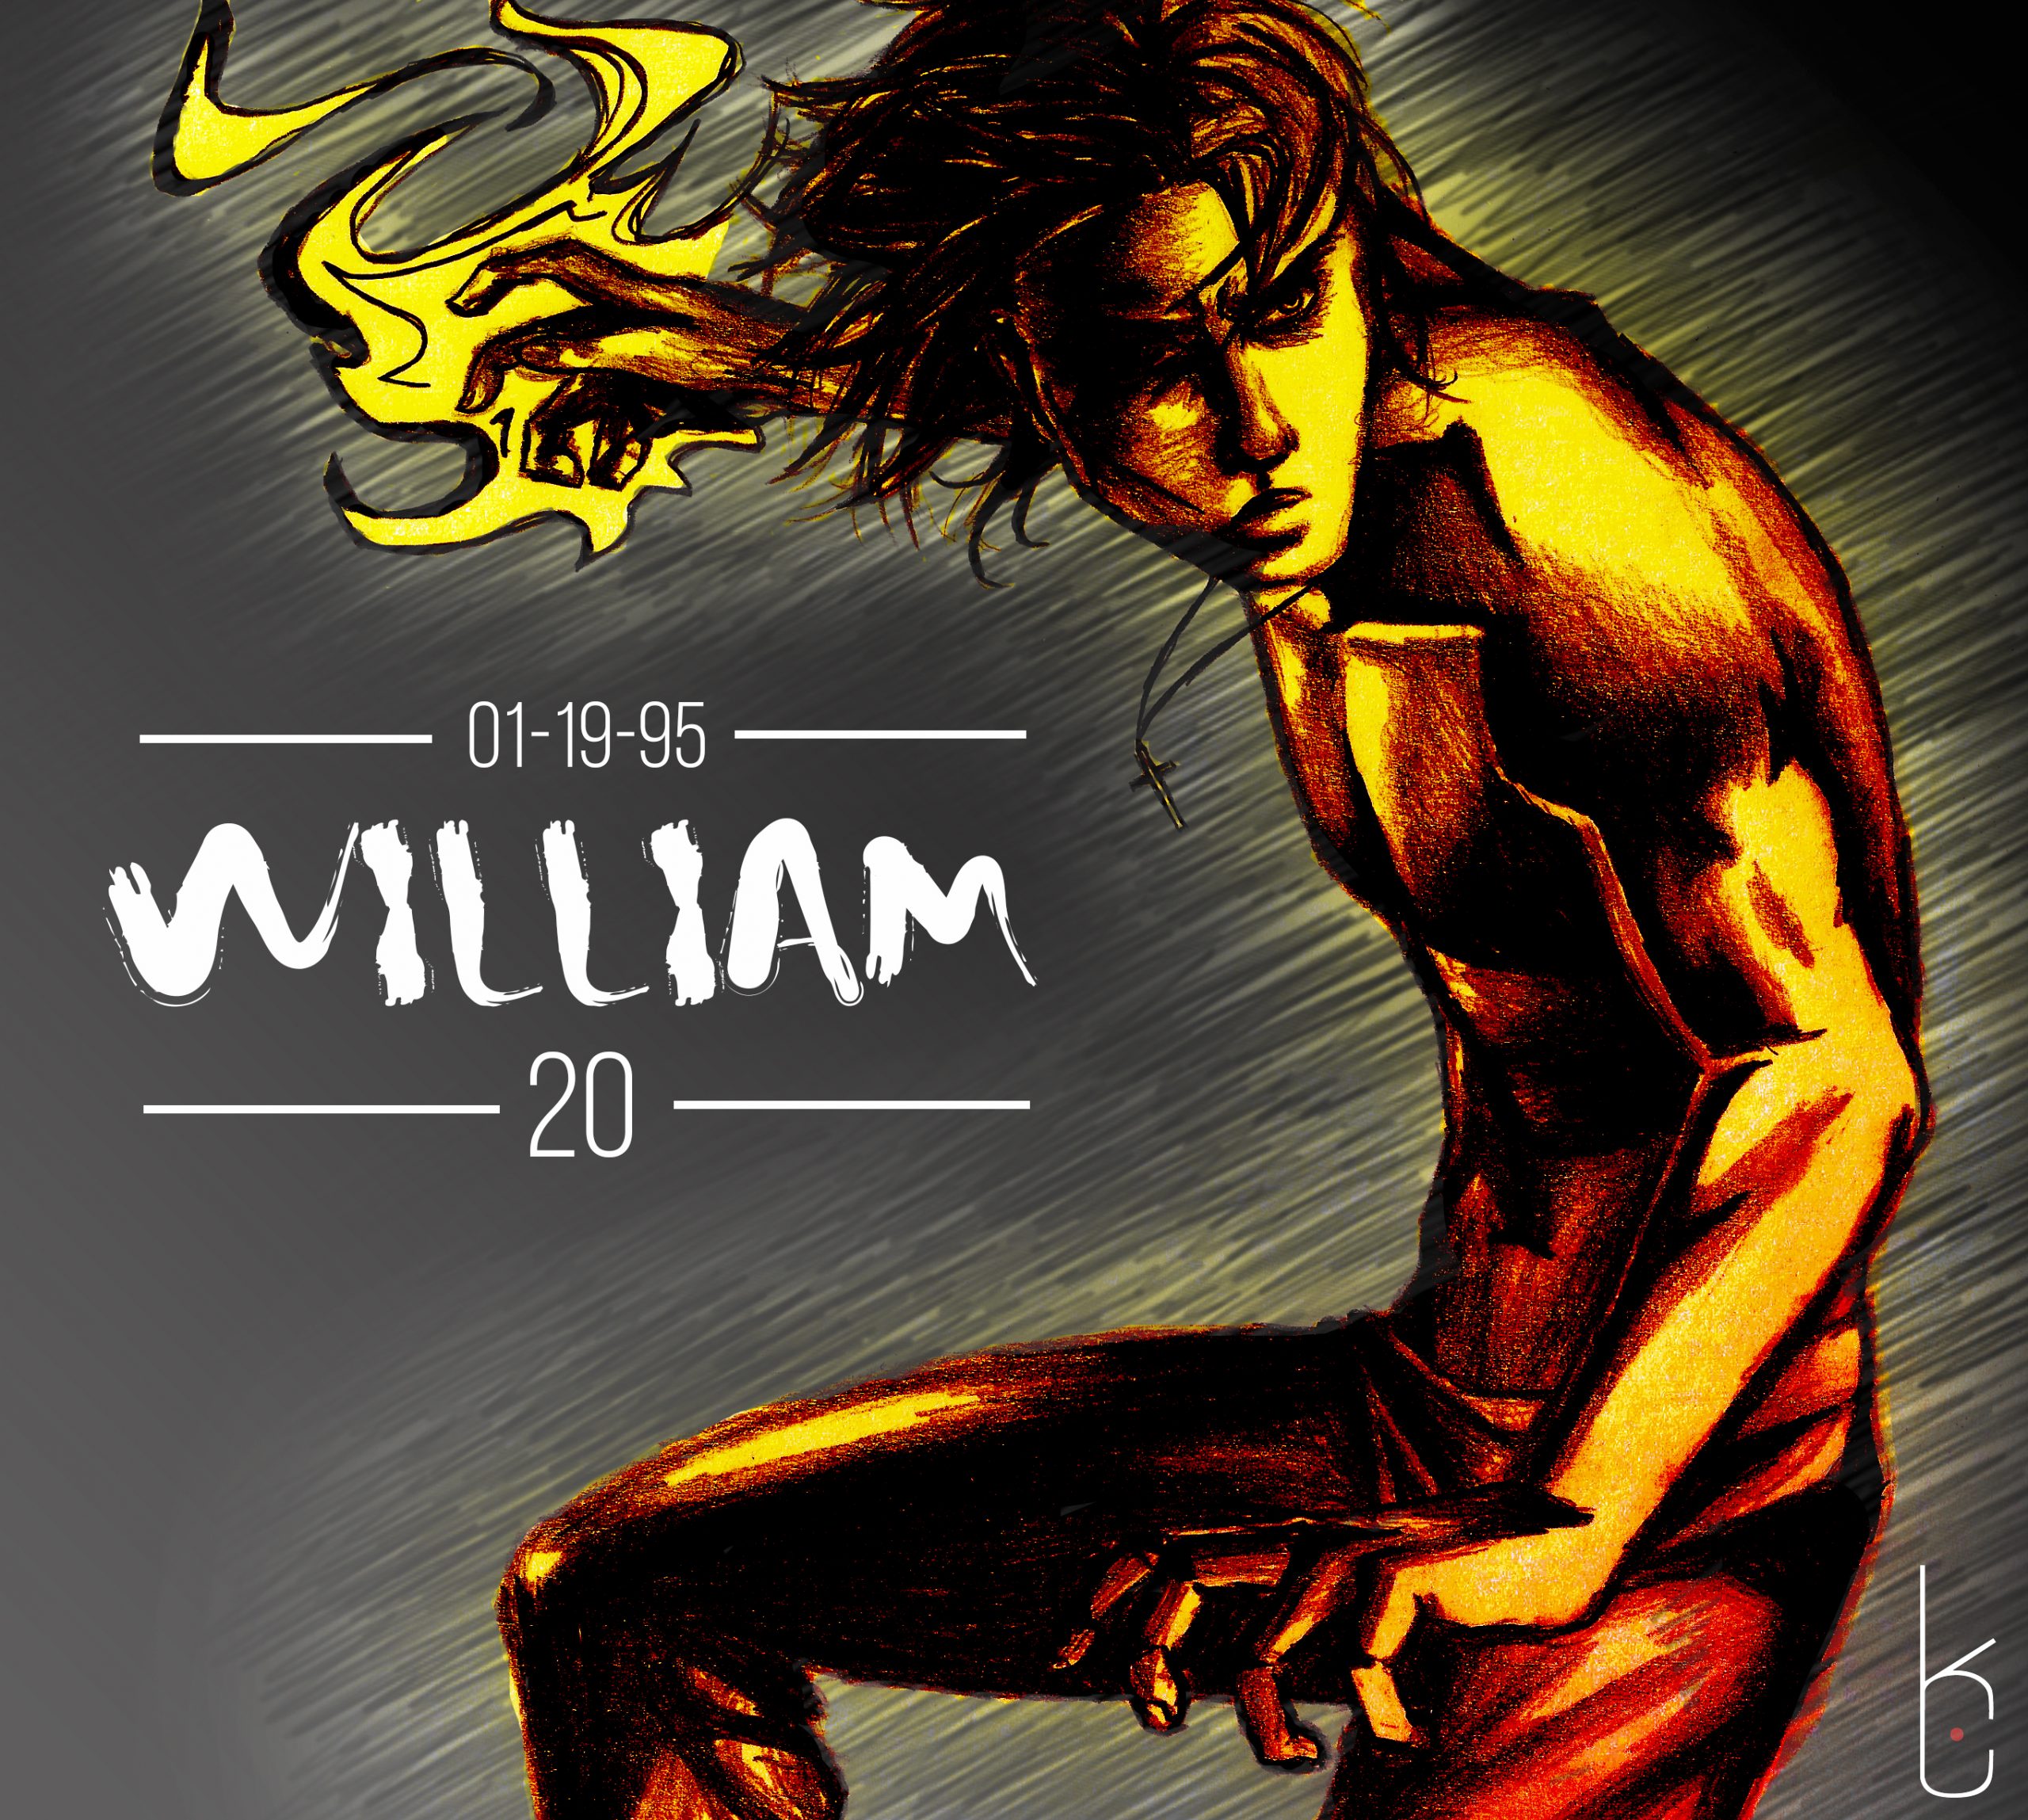 “William’s 20th”